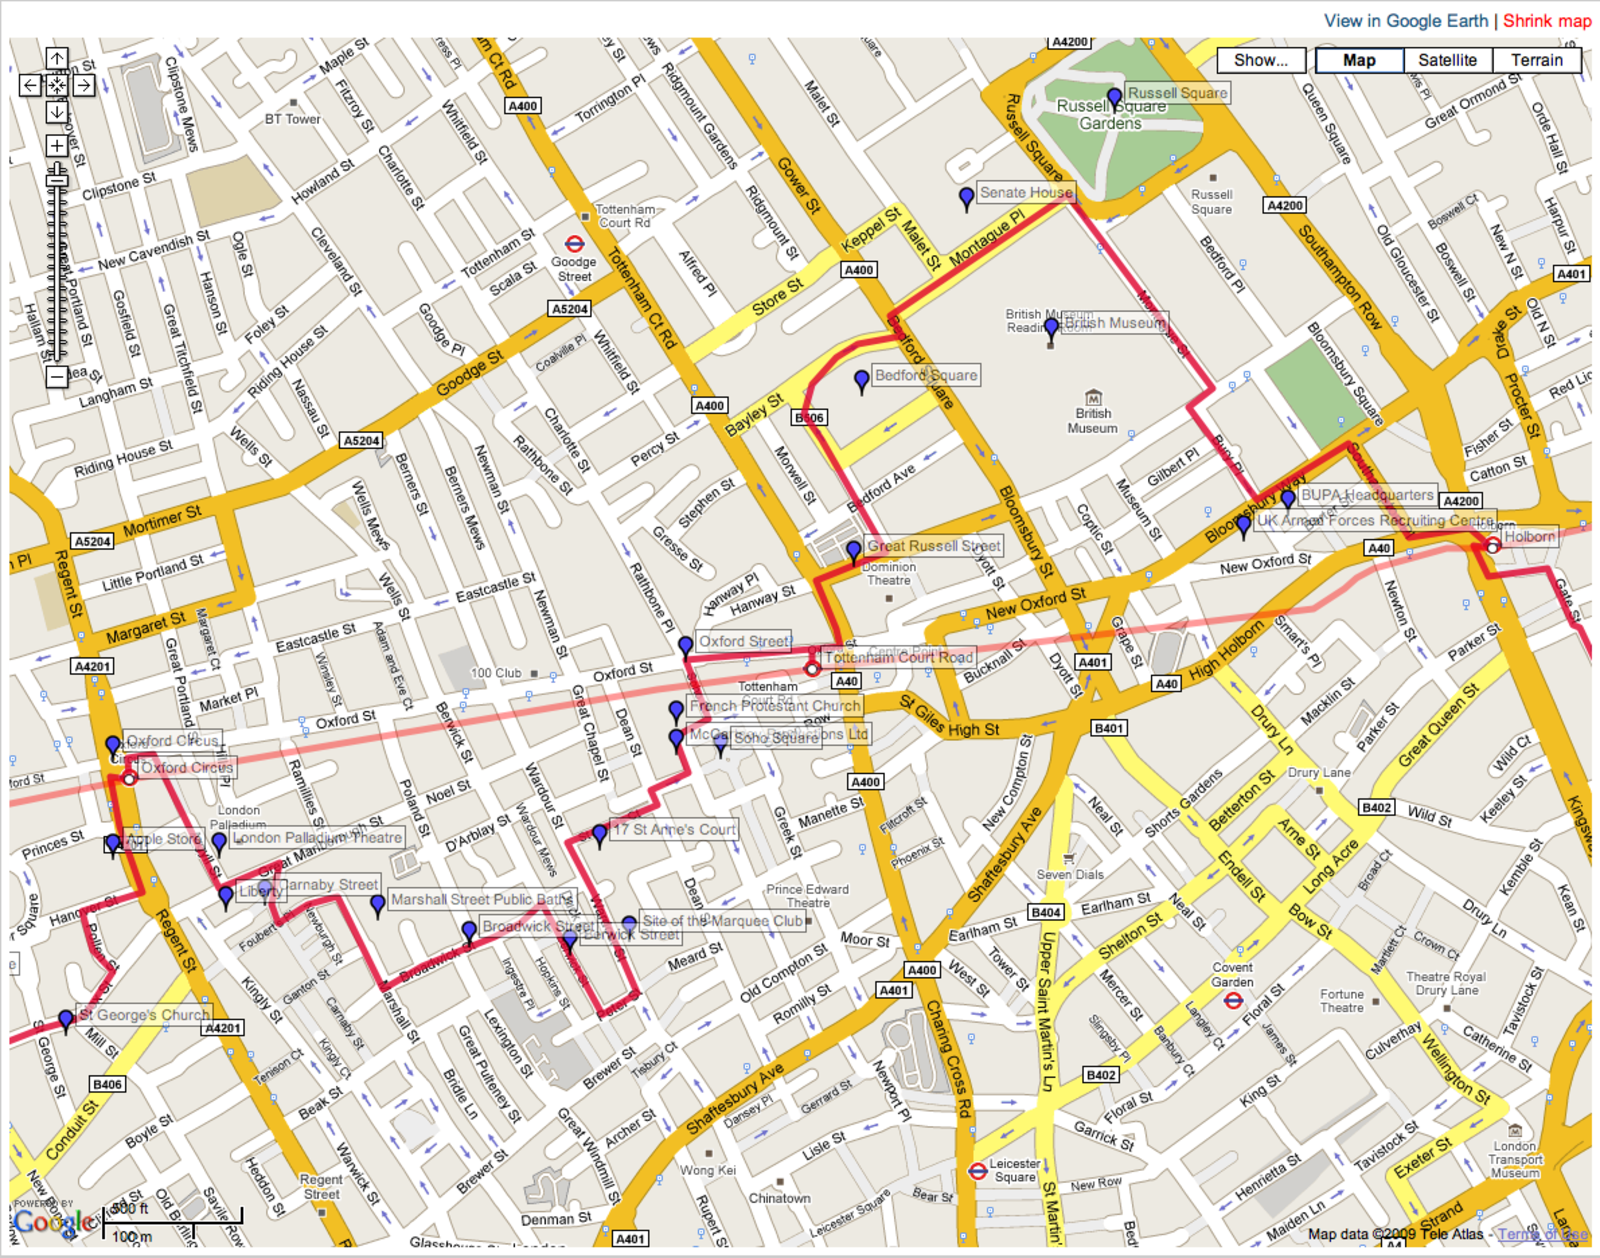 A screenshot showing a tubewalking route